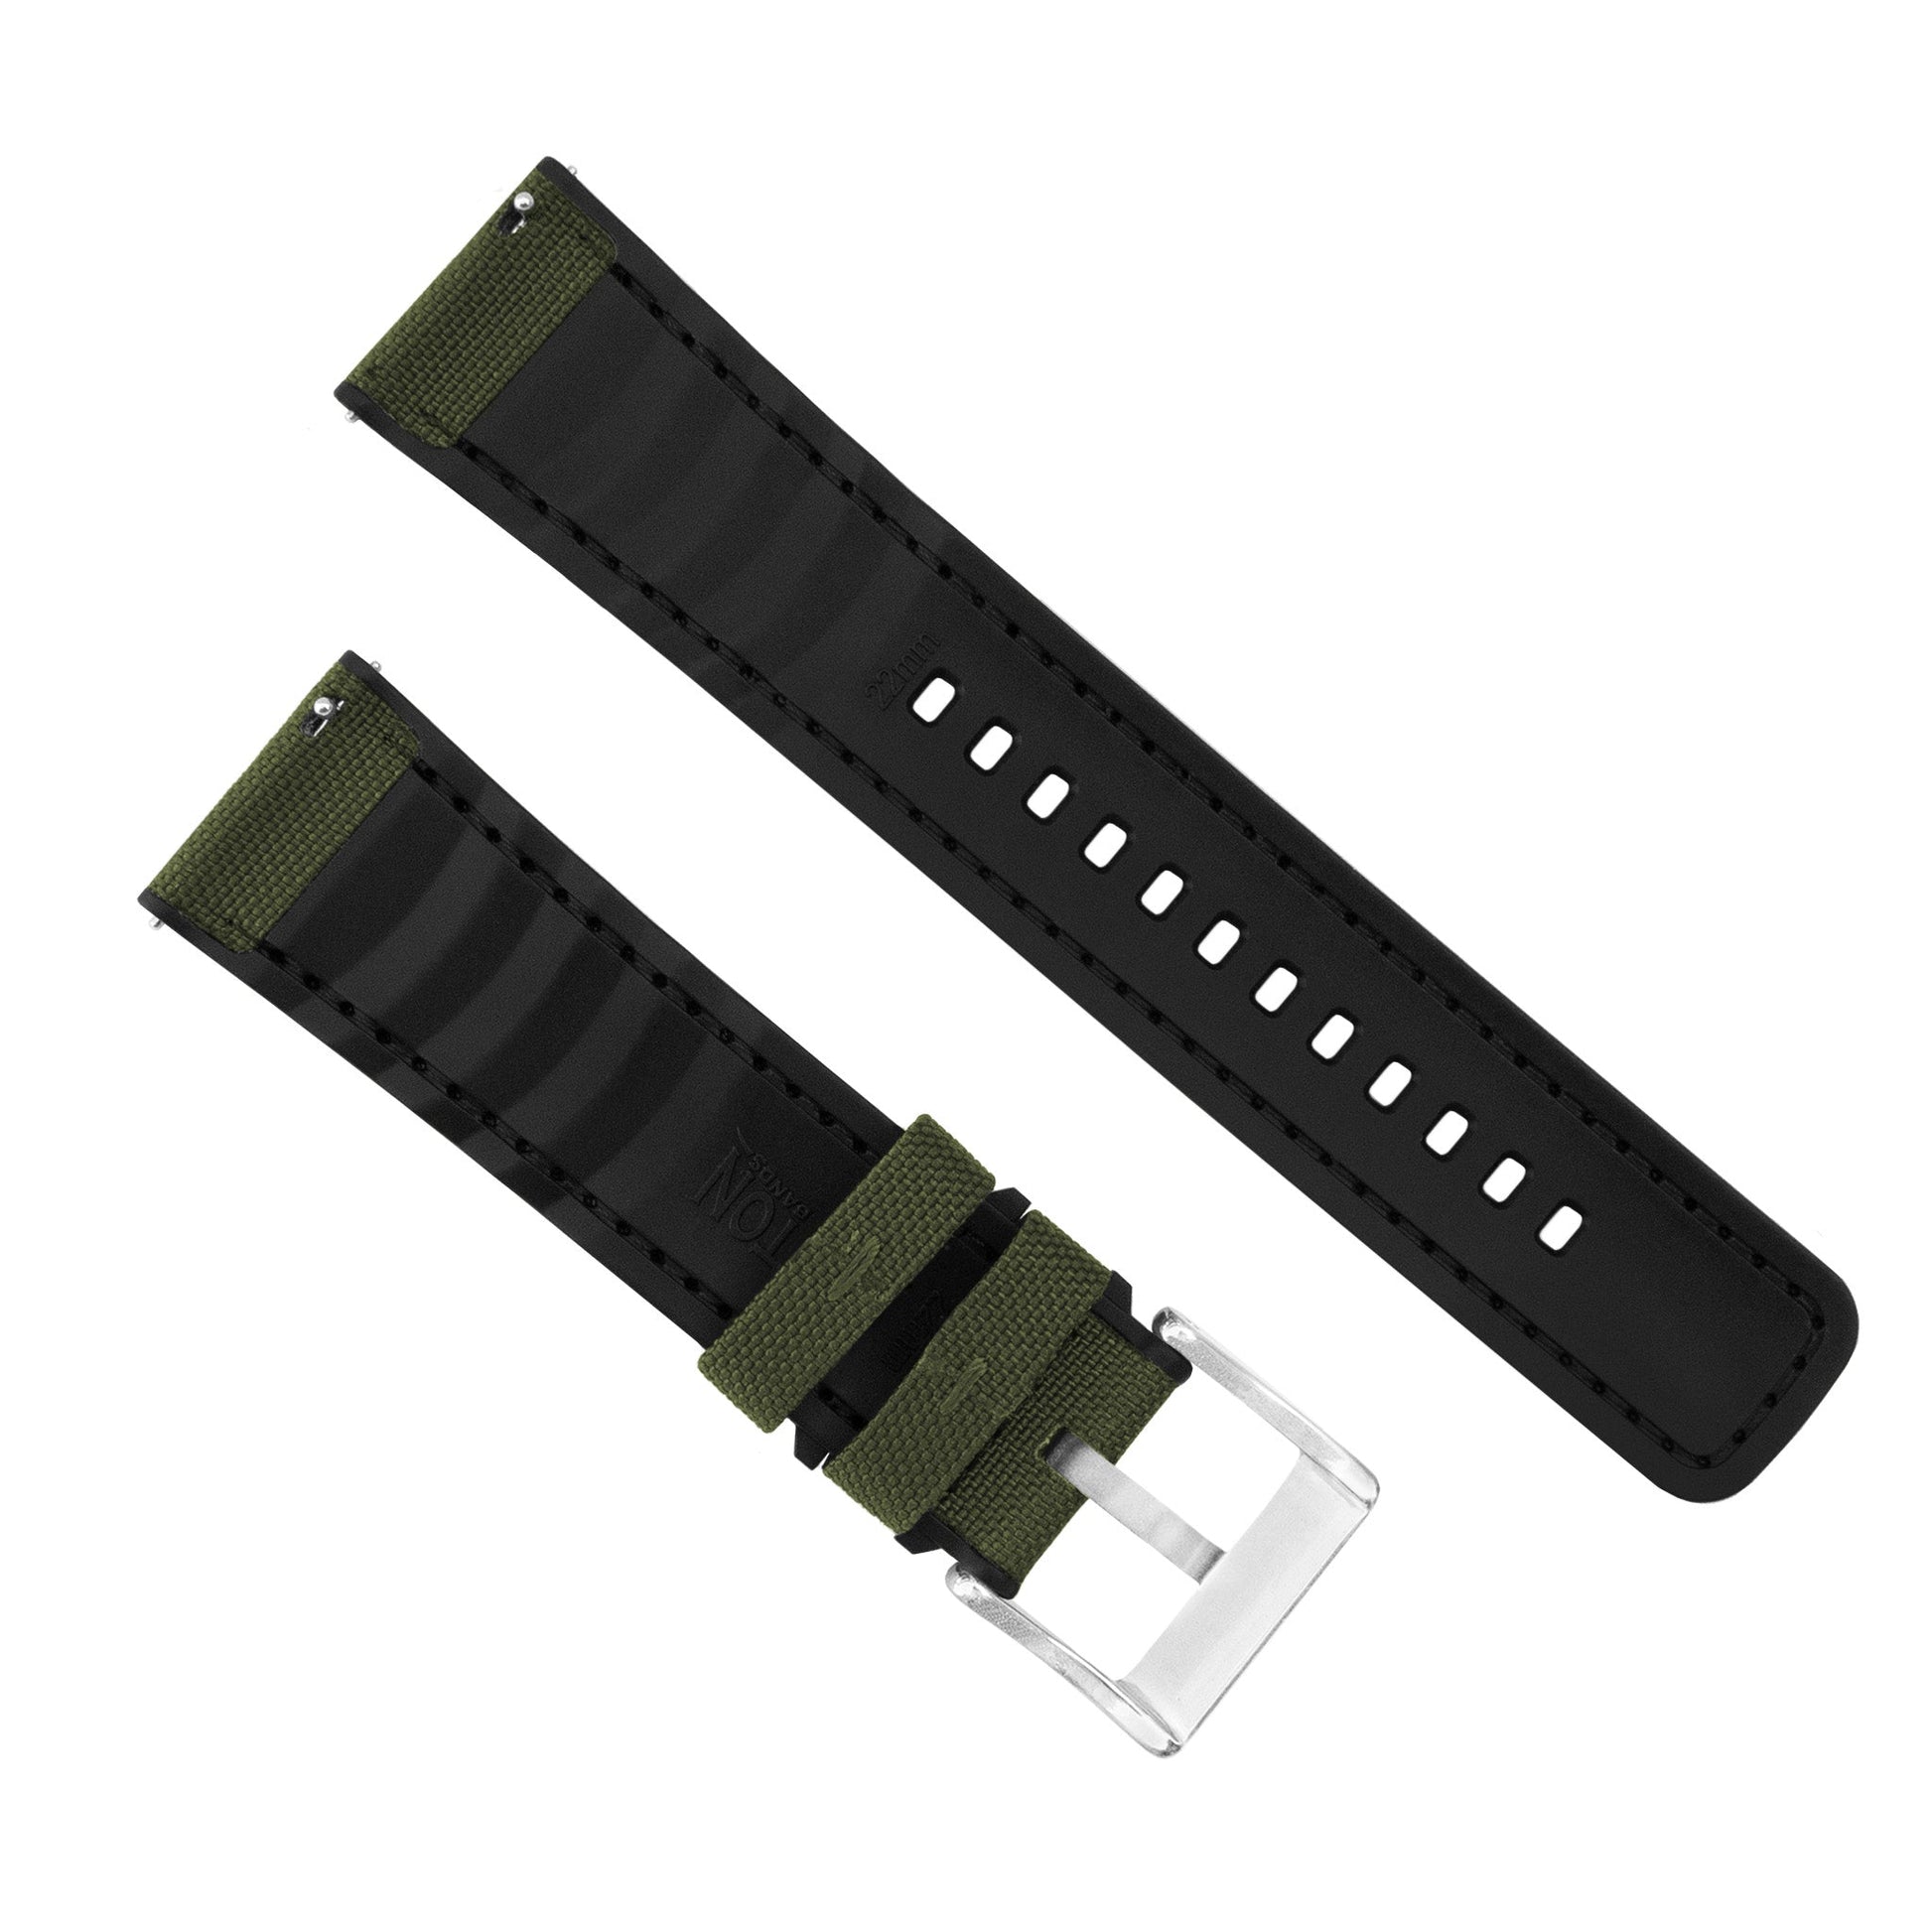 Samsung Galaxy Watch | Cordrua Fabric & Silicone Hybrid | Army Green - Barton Watch Bands